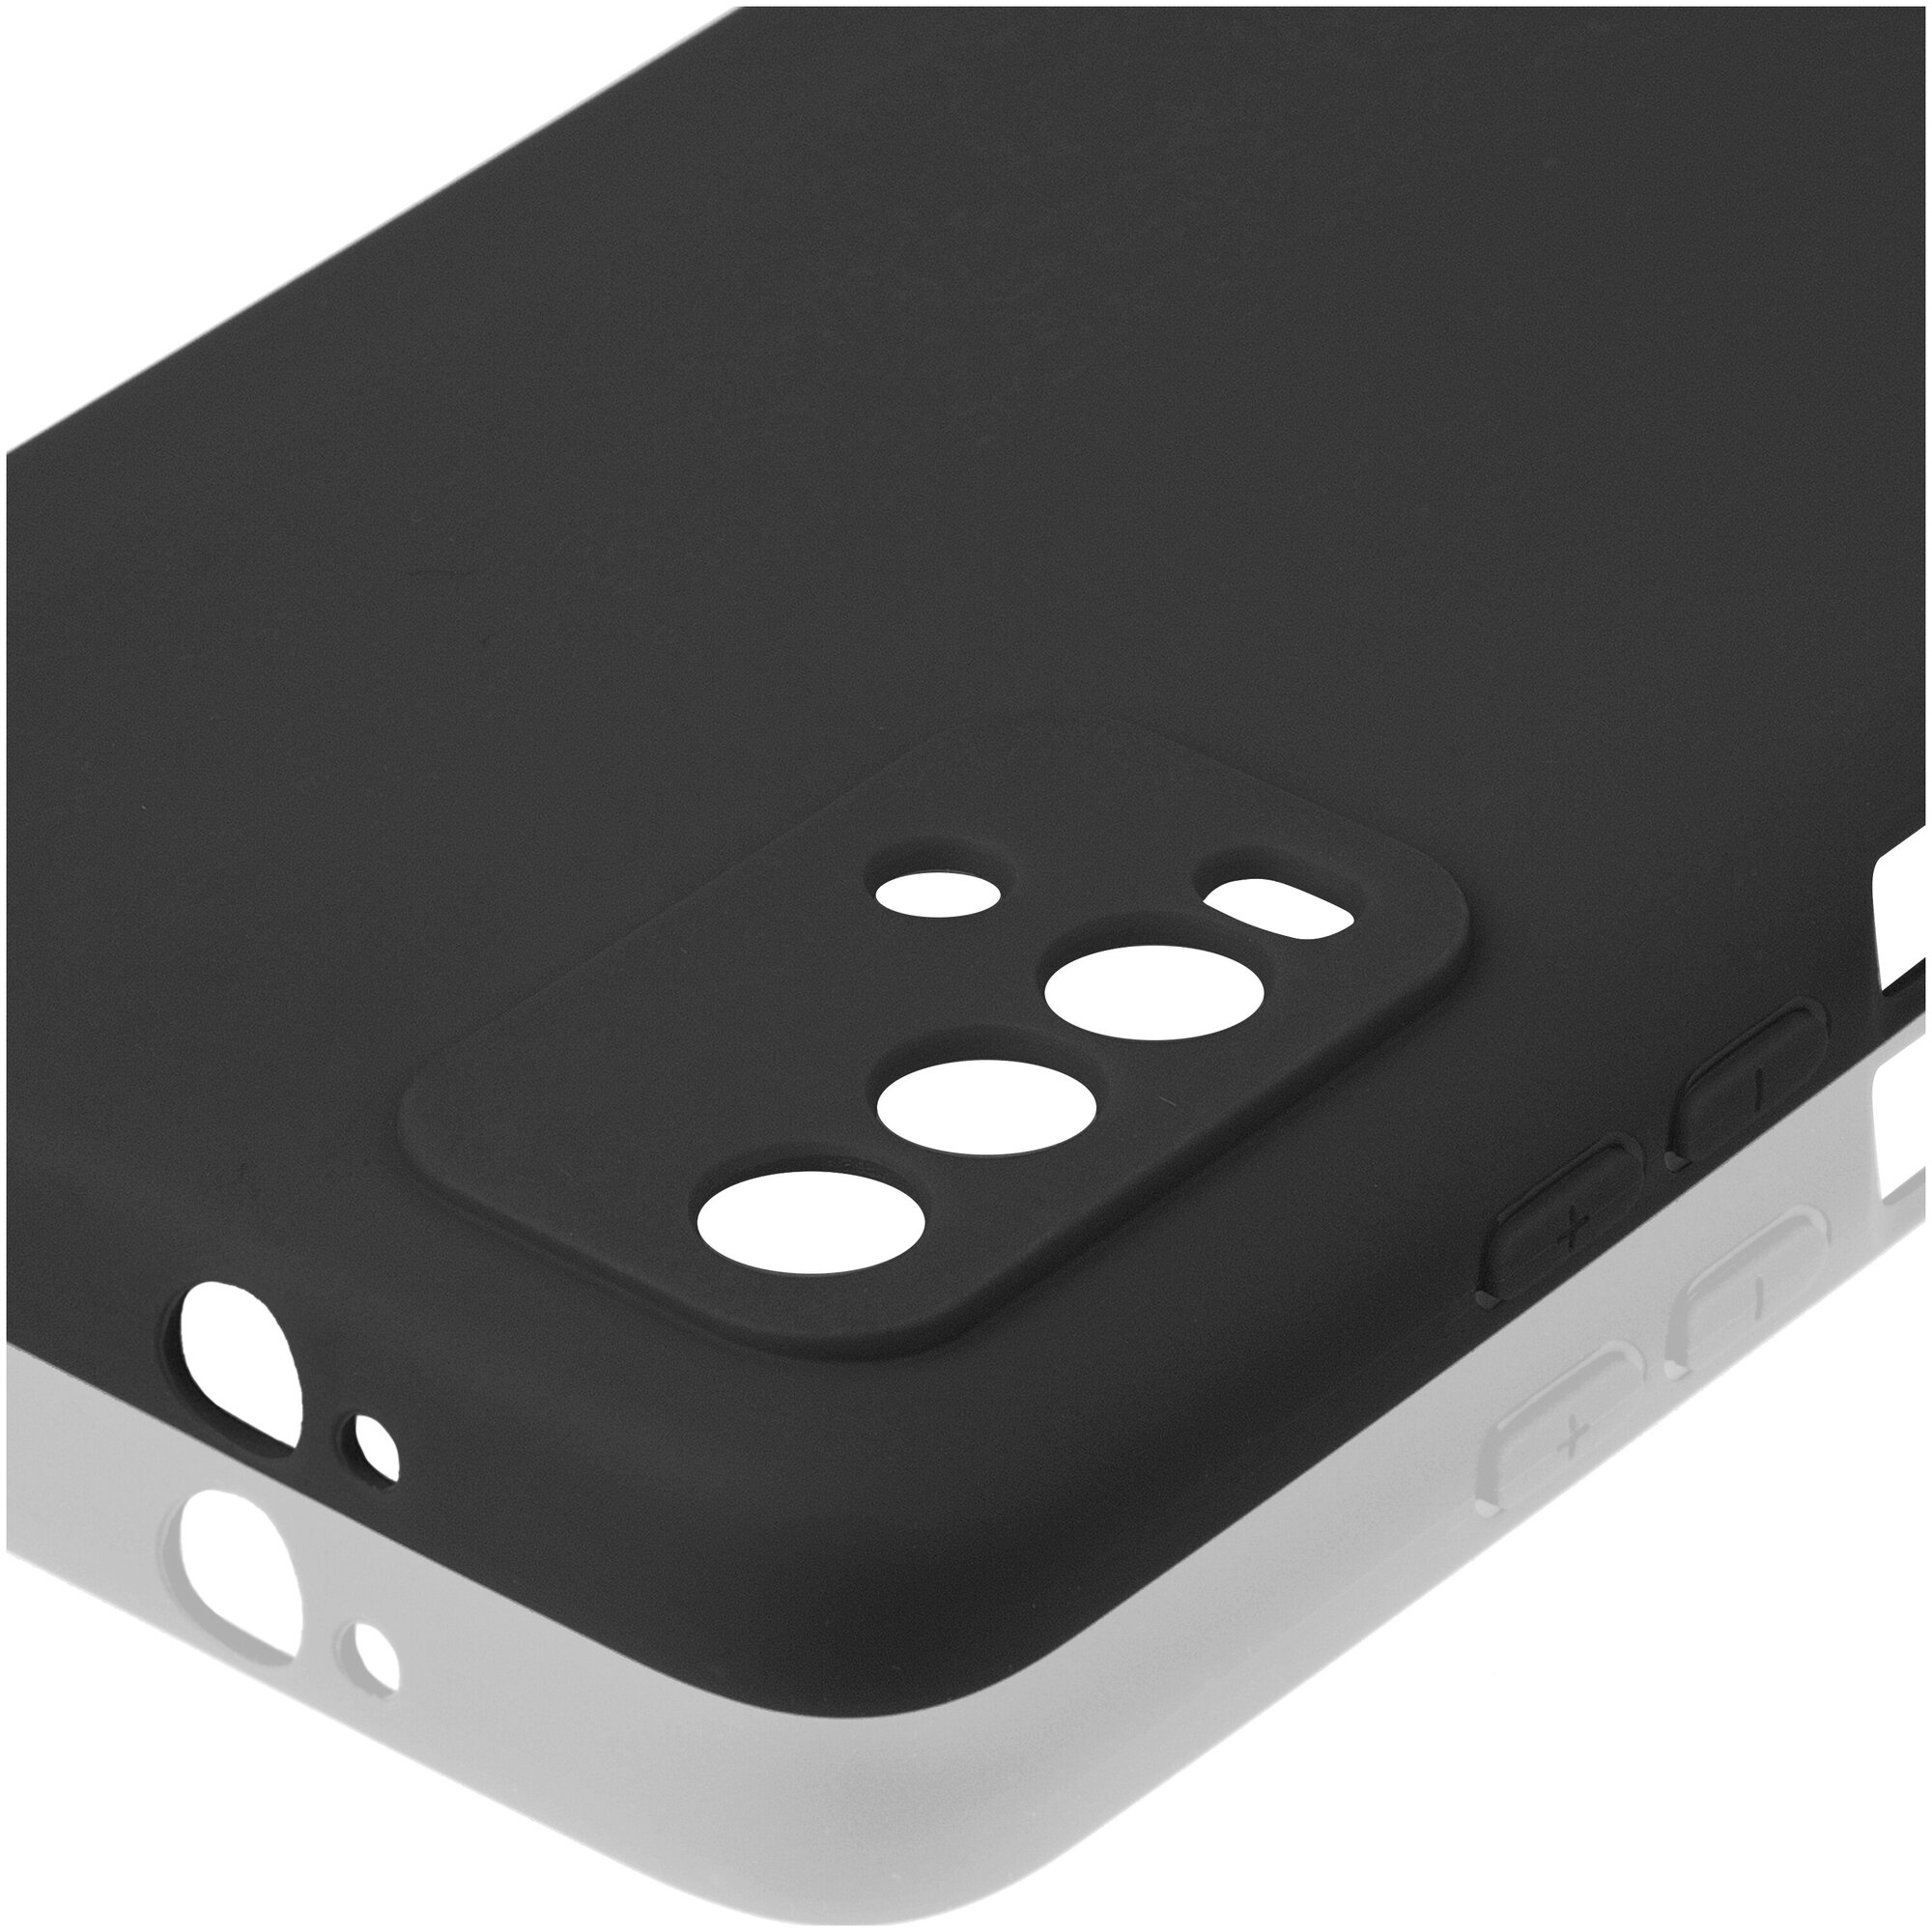 Чехол ROSCO для Xiaomi Redmi 9T, Poco M3 (Сяоми Редми 9Т, Поко м3), бортик (защита) вокруг блока камеры, силиконовый чехол, черный